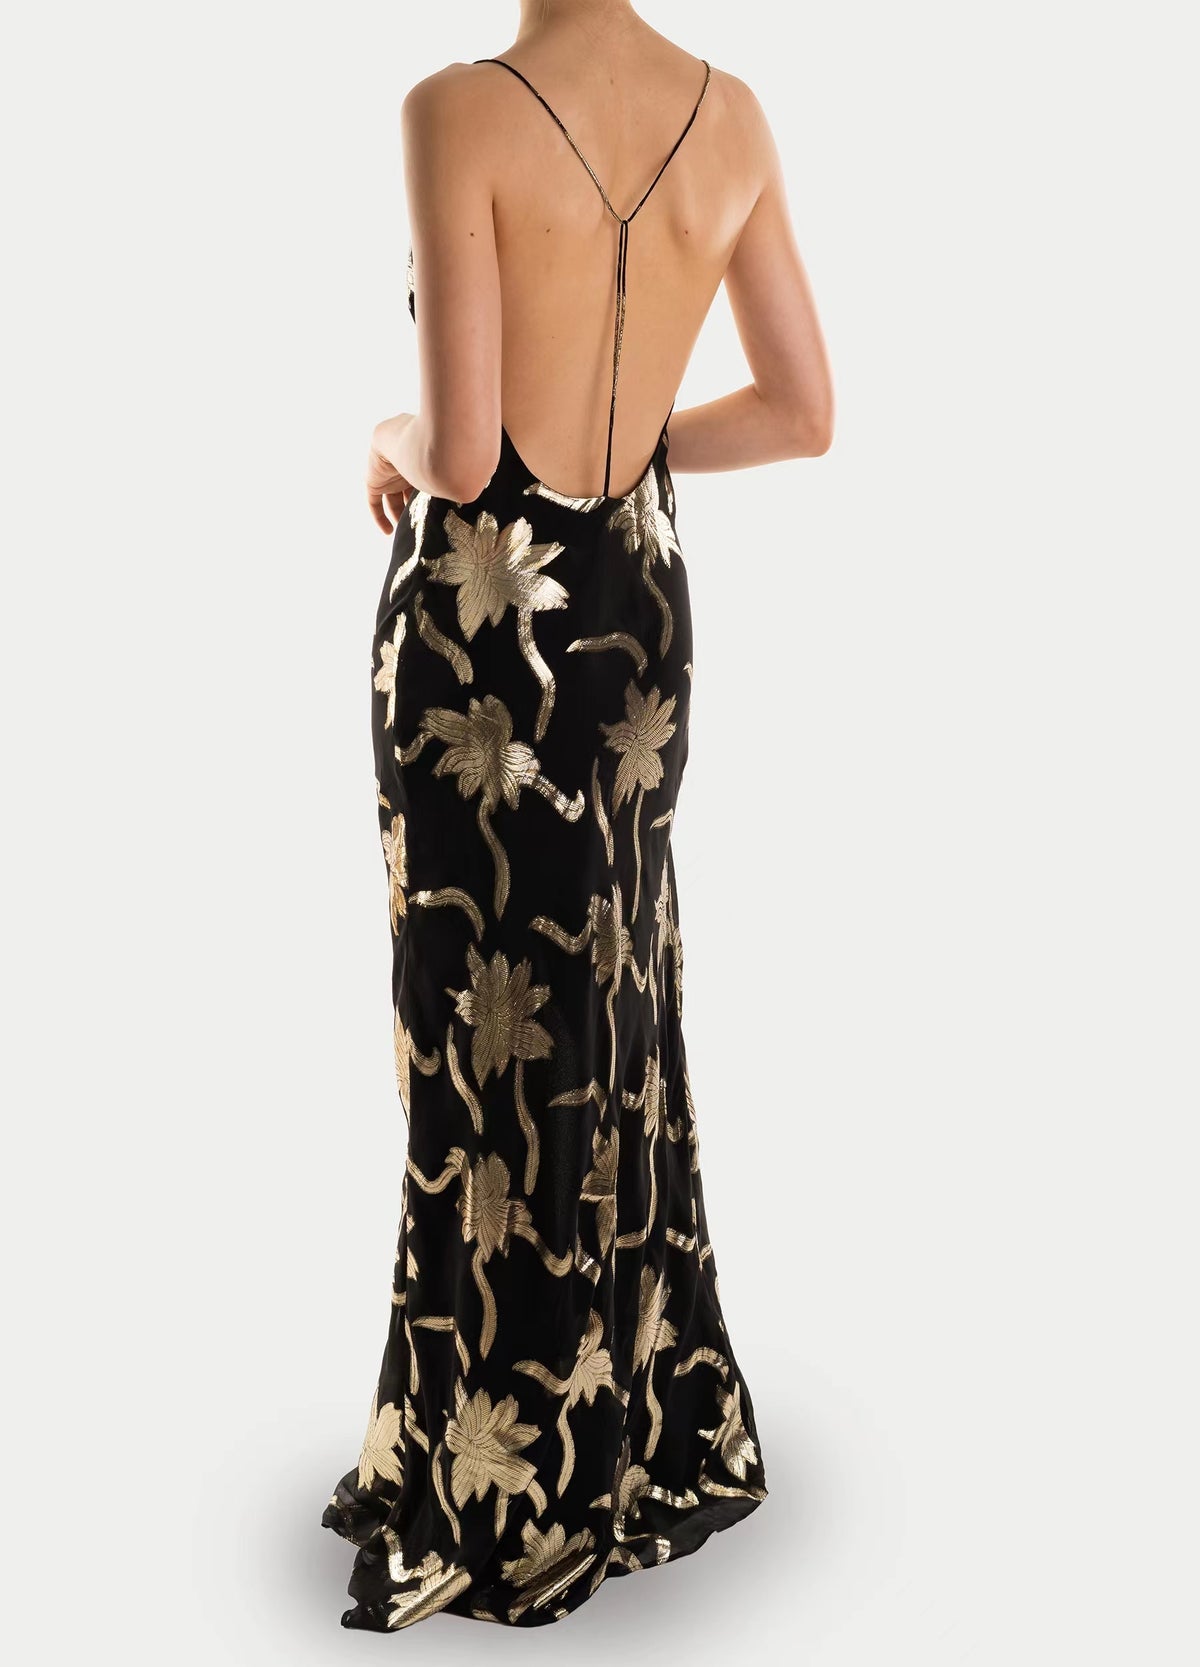 Yilei Dress - Gold Flowers Black